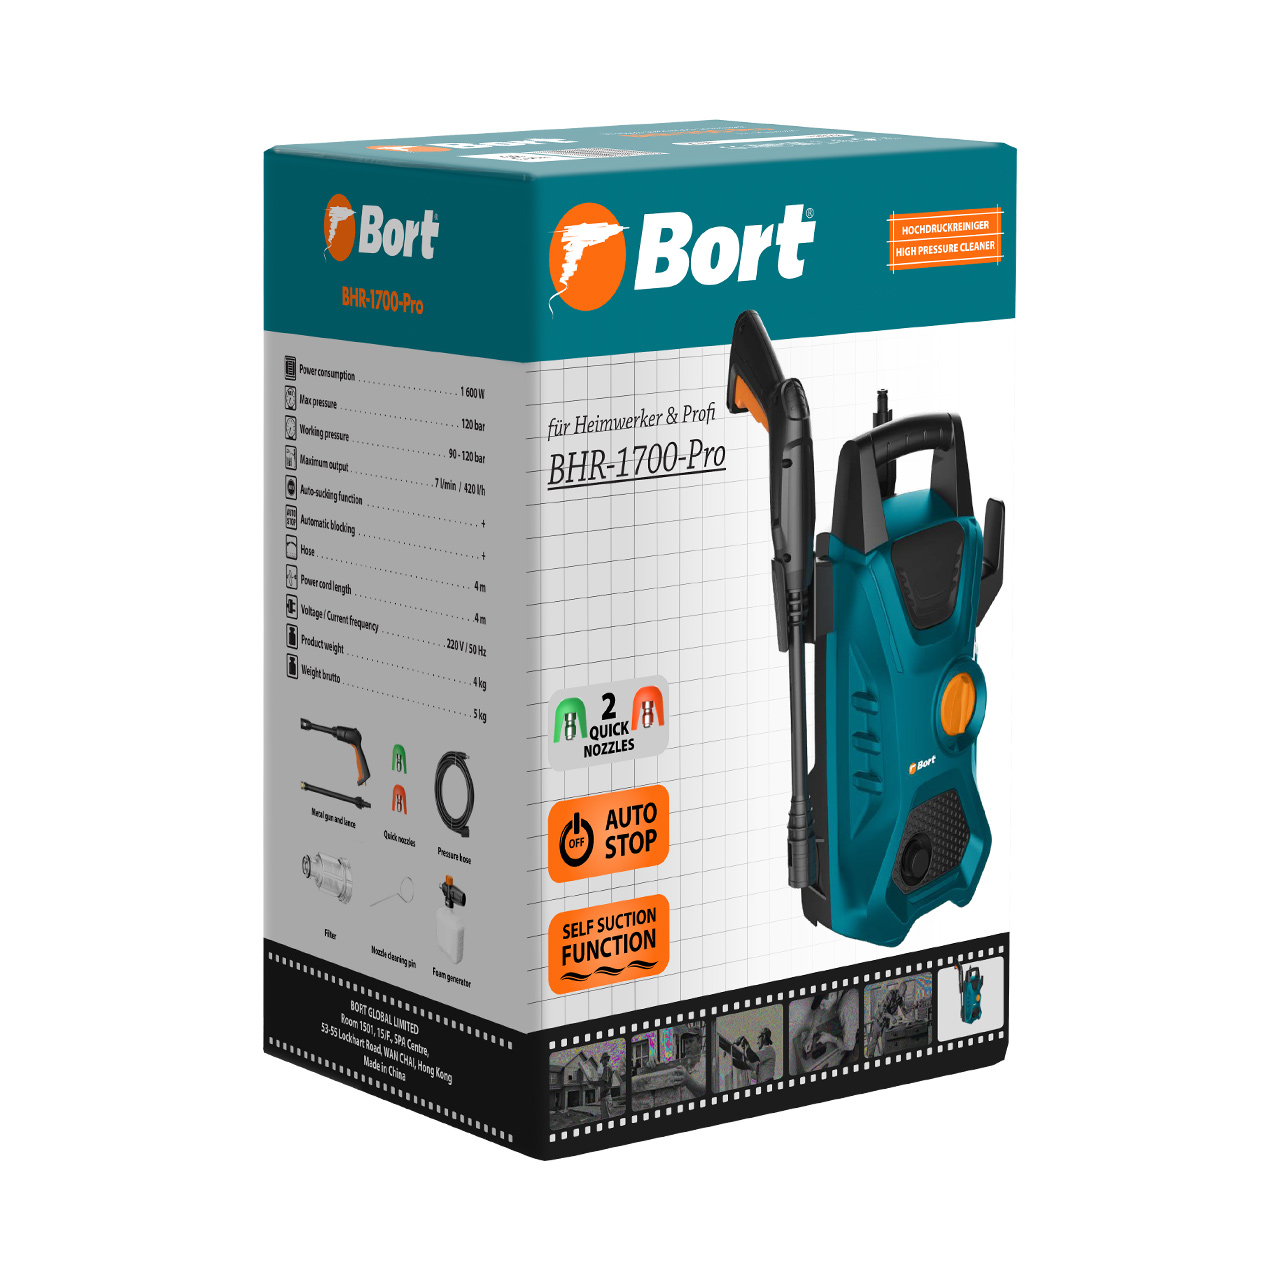    Bort BHR-1700-Pro (93416305)